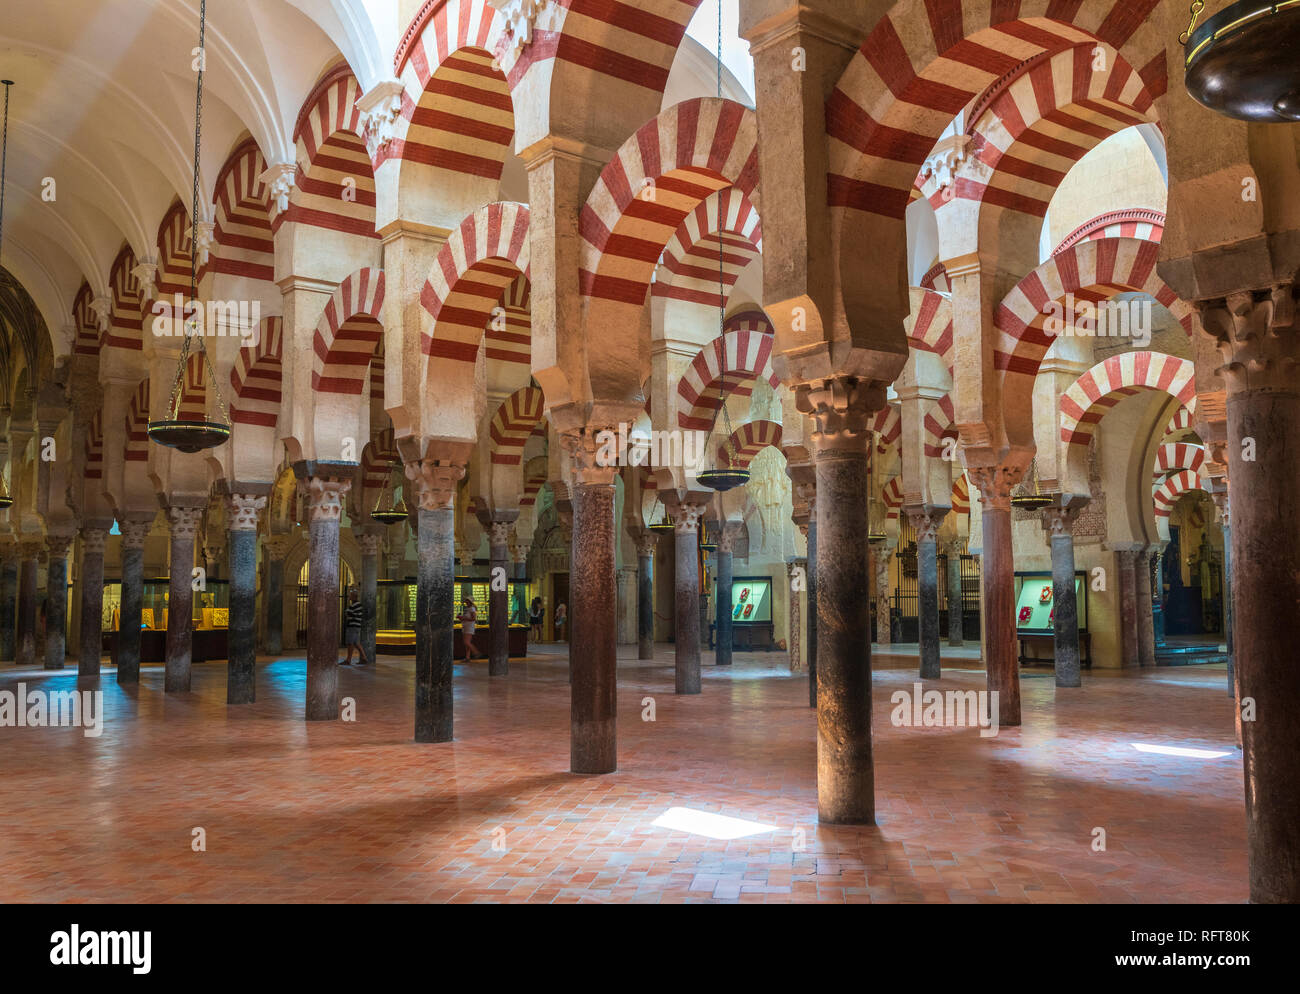 Arcades et colonnes décorées dans le style mauresque, Mezquita-Catedral (Grande Mosquée de Cordoue), Cordoue, UNESCO World Heritage Site, Andalousie, Espagne Banque D'Images